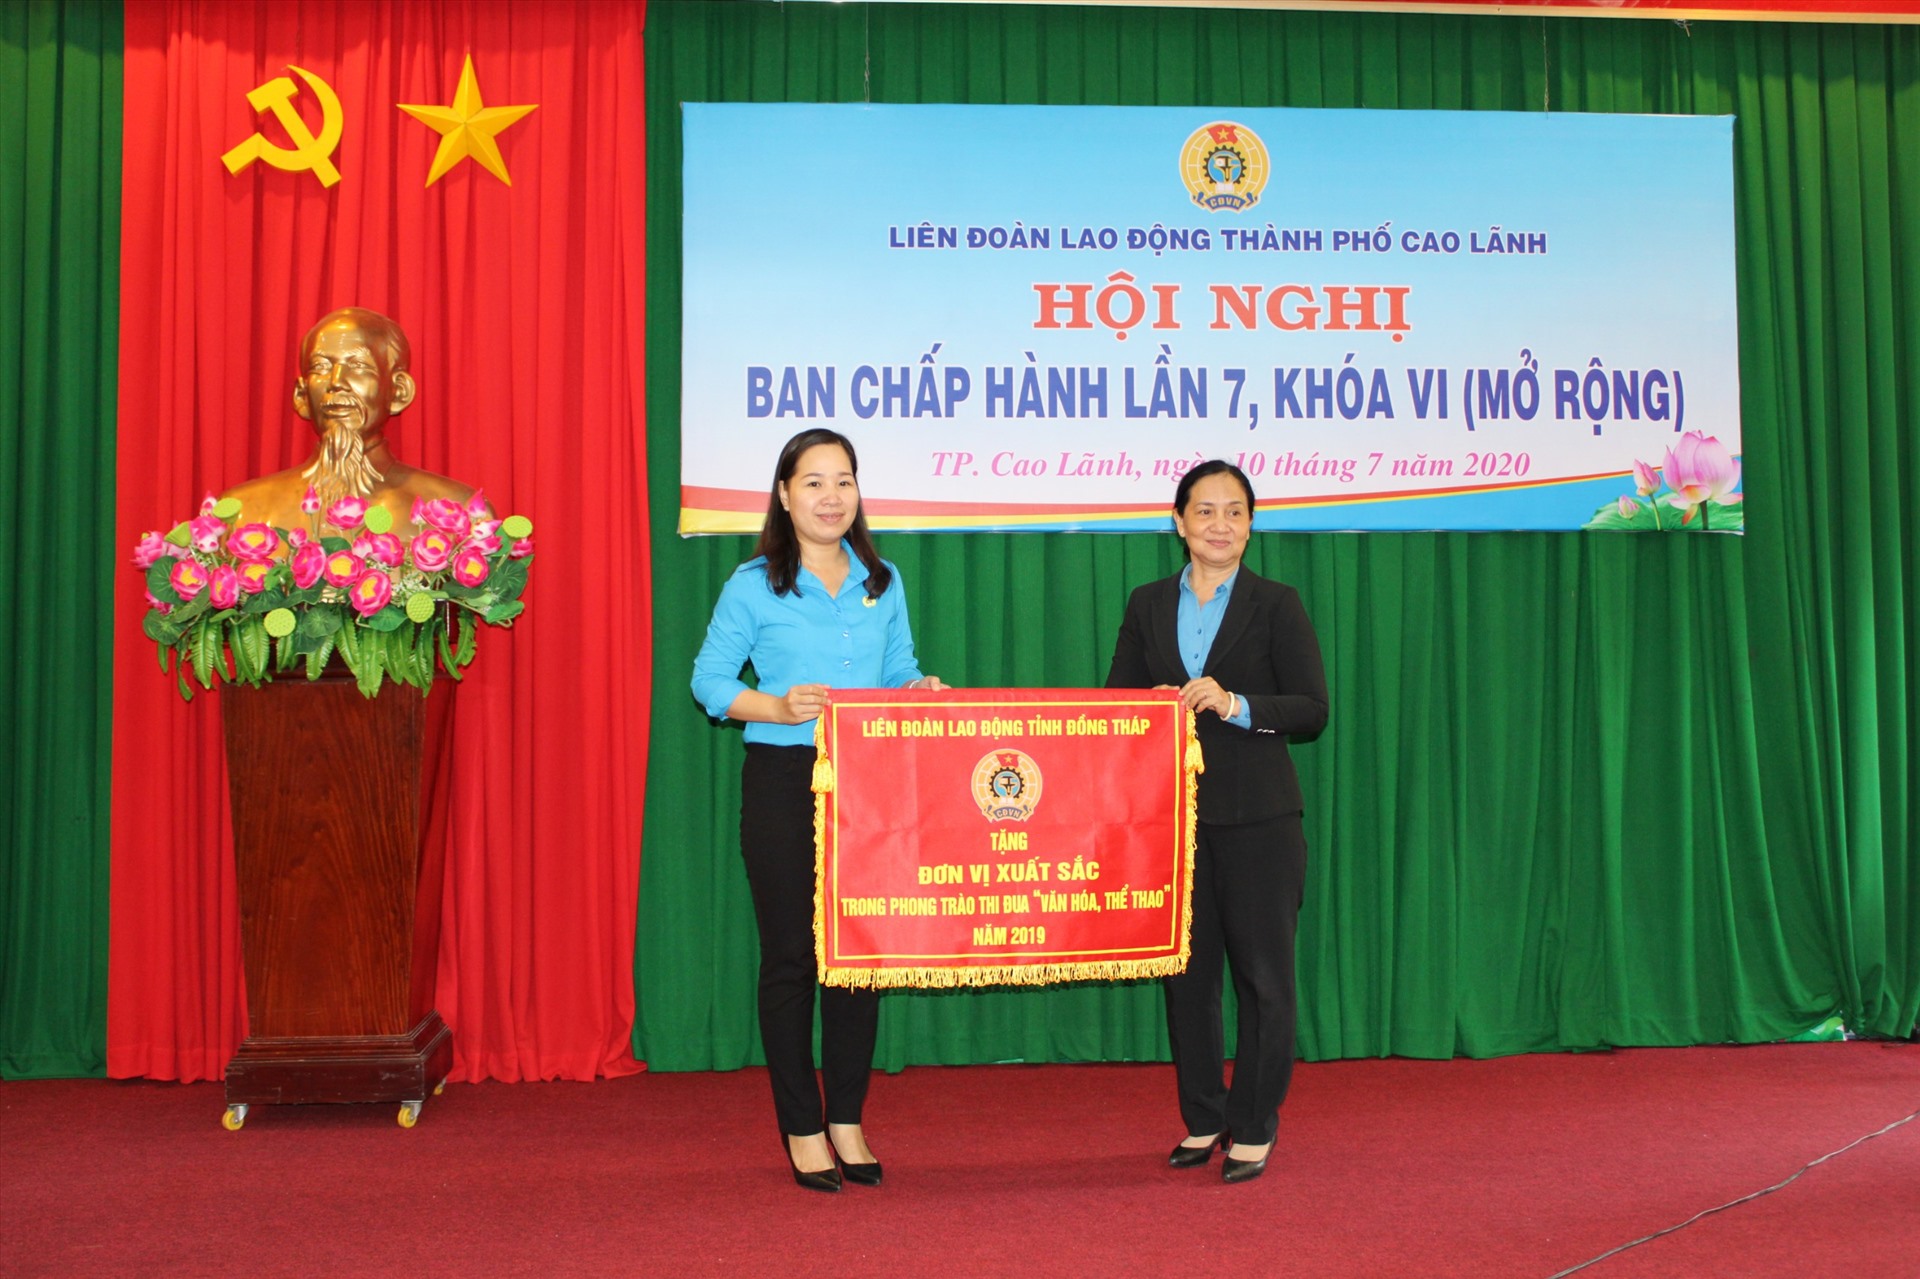 Phó chủ tịch LĐLĐ tỉnh Đồng Tháp Nguyễn Thị Thu Ba tặng cờ thi đua chuyên đề “Văn hóa-thể thao” năm 2019 cho LĐLĐ TP Cao Lãnh.